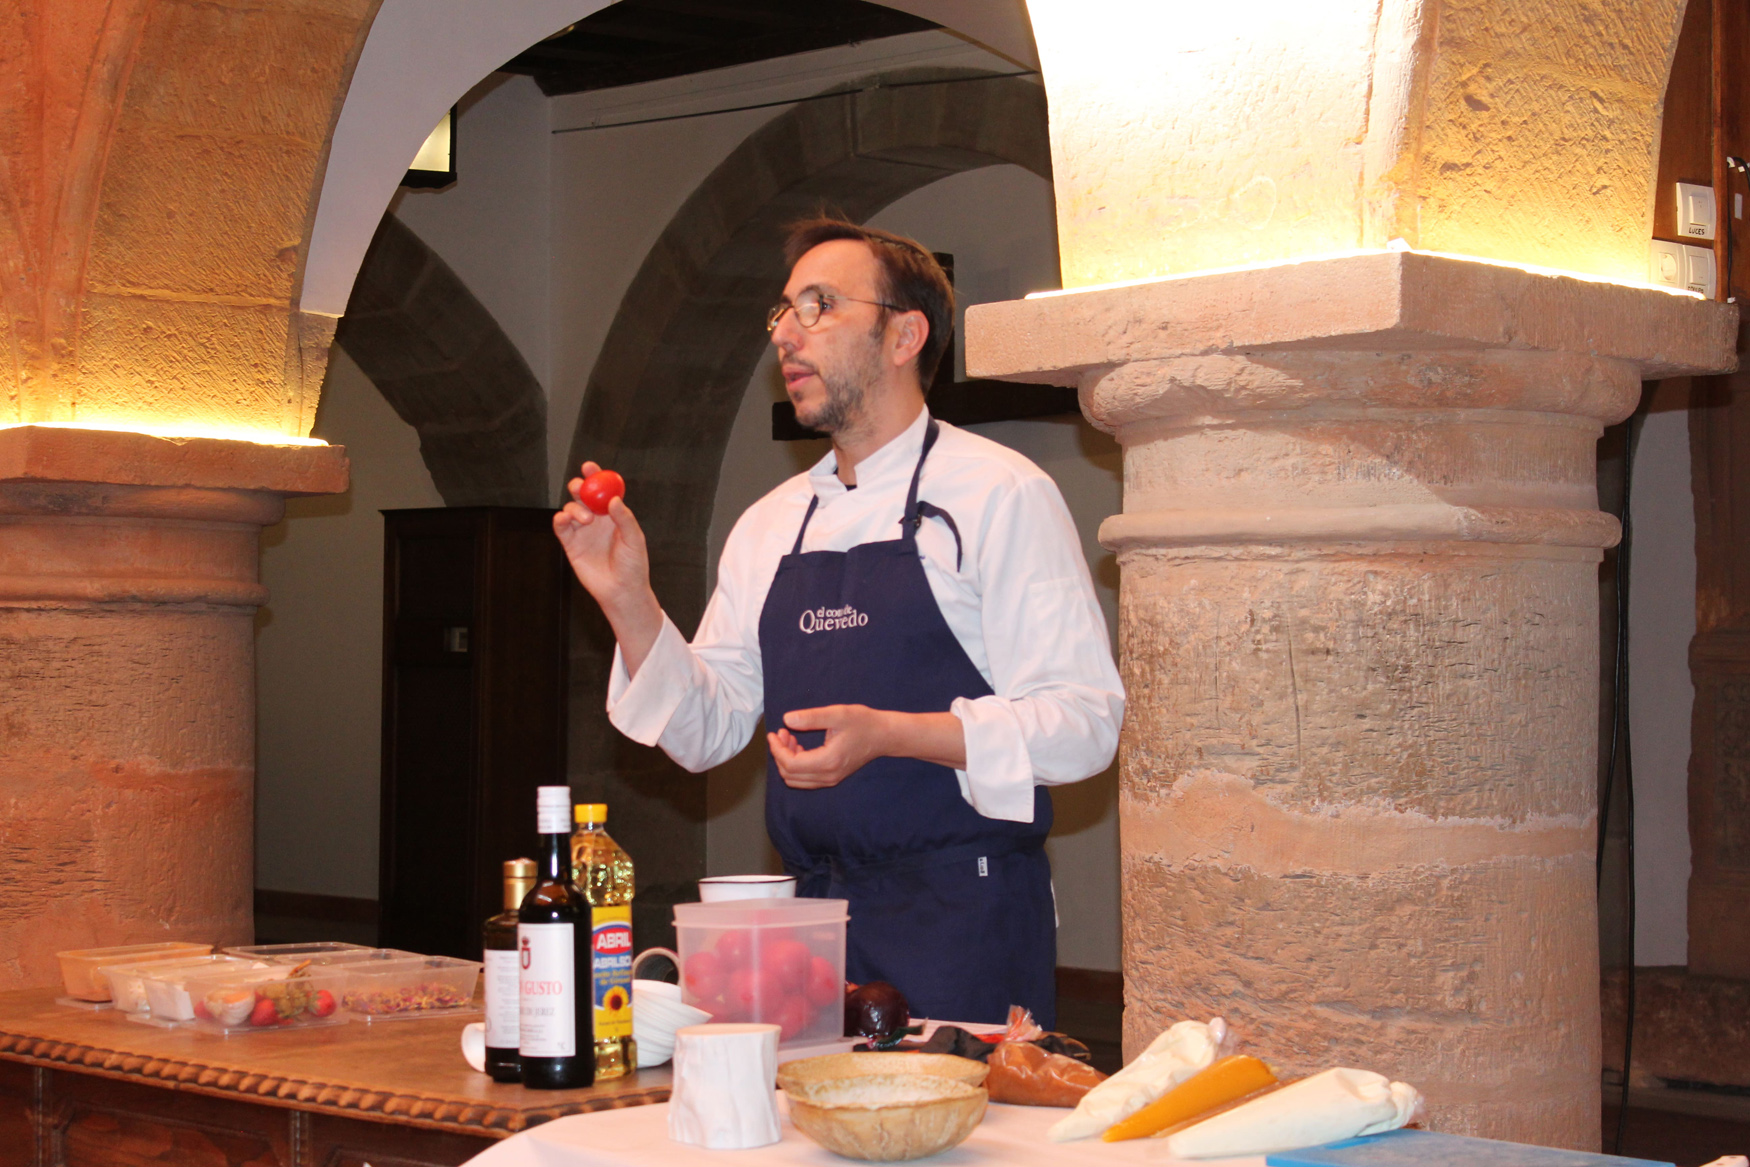 El chef con una Estrella Michelín José Antonio Medina imparte un Taller de Cocina Saludable en Villanueva de los Infantes